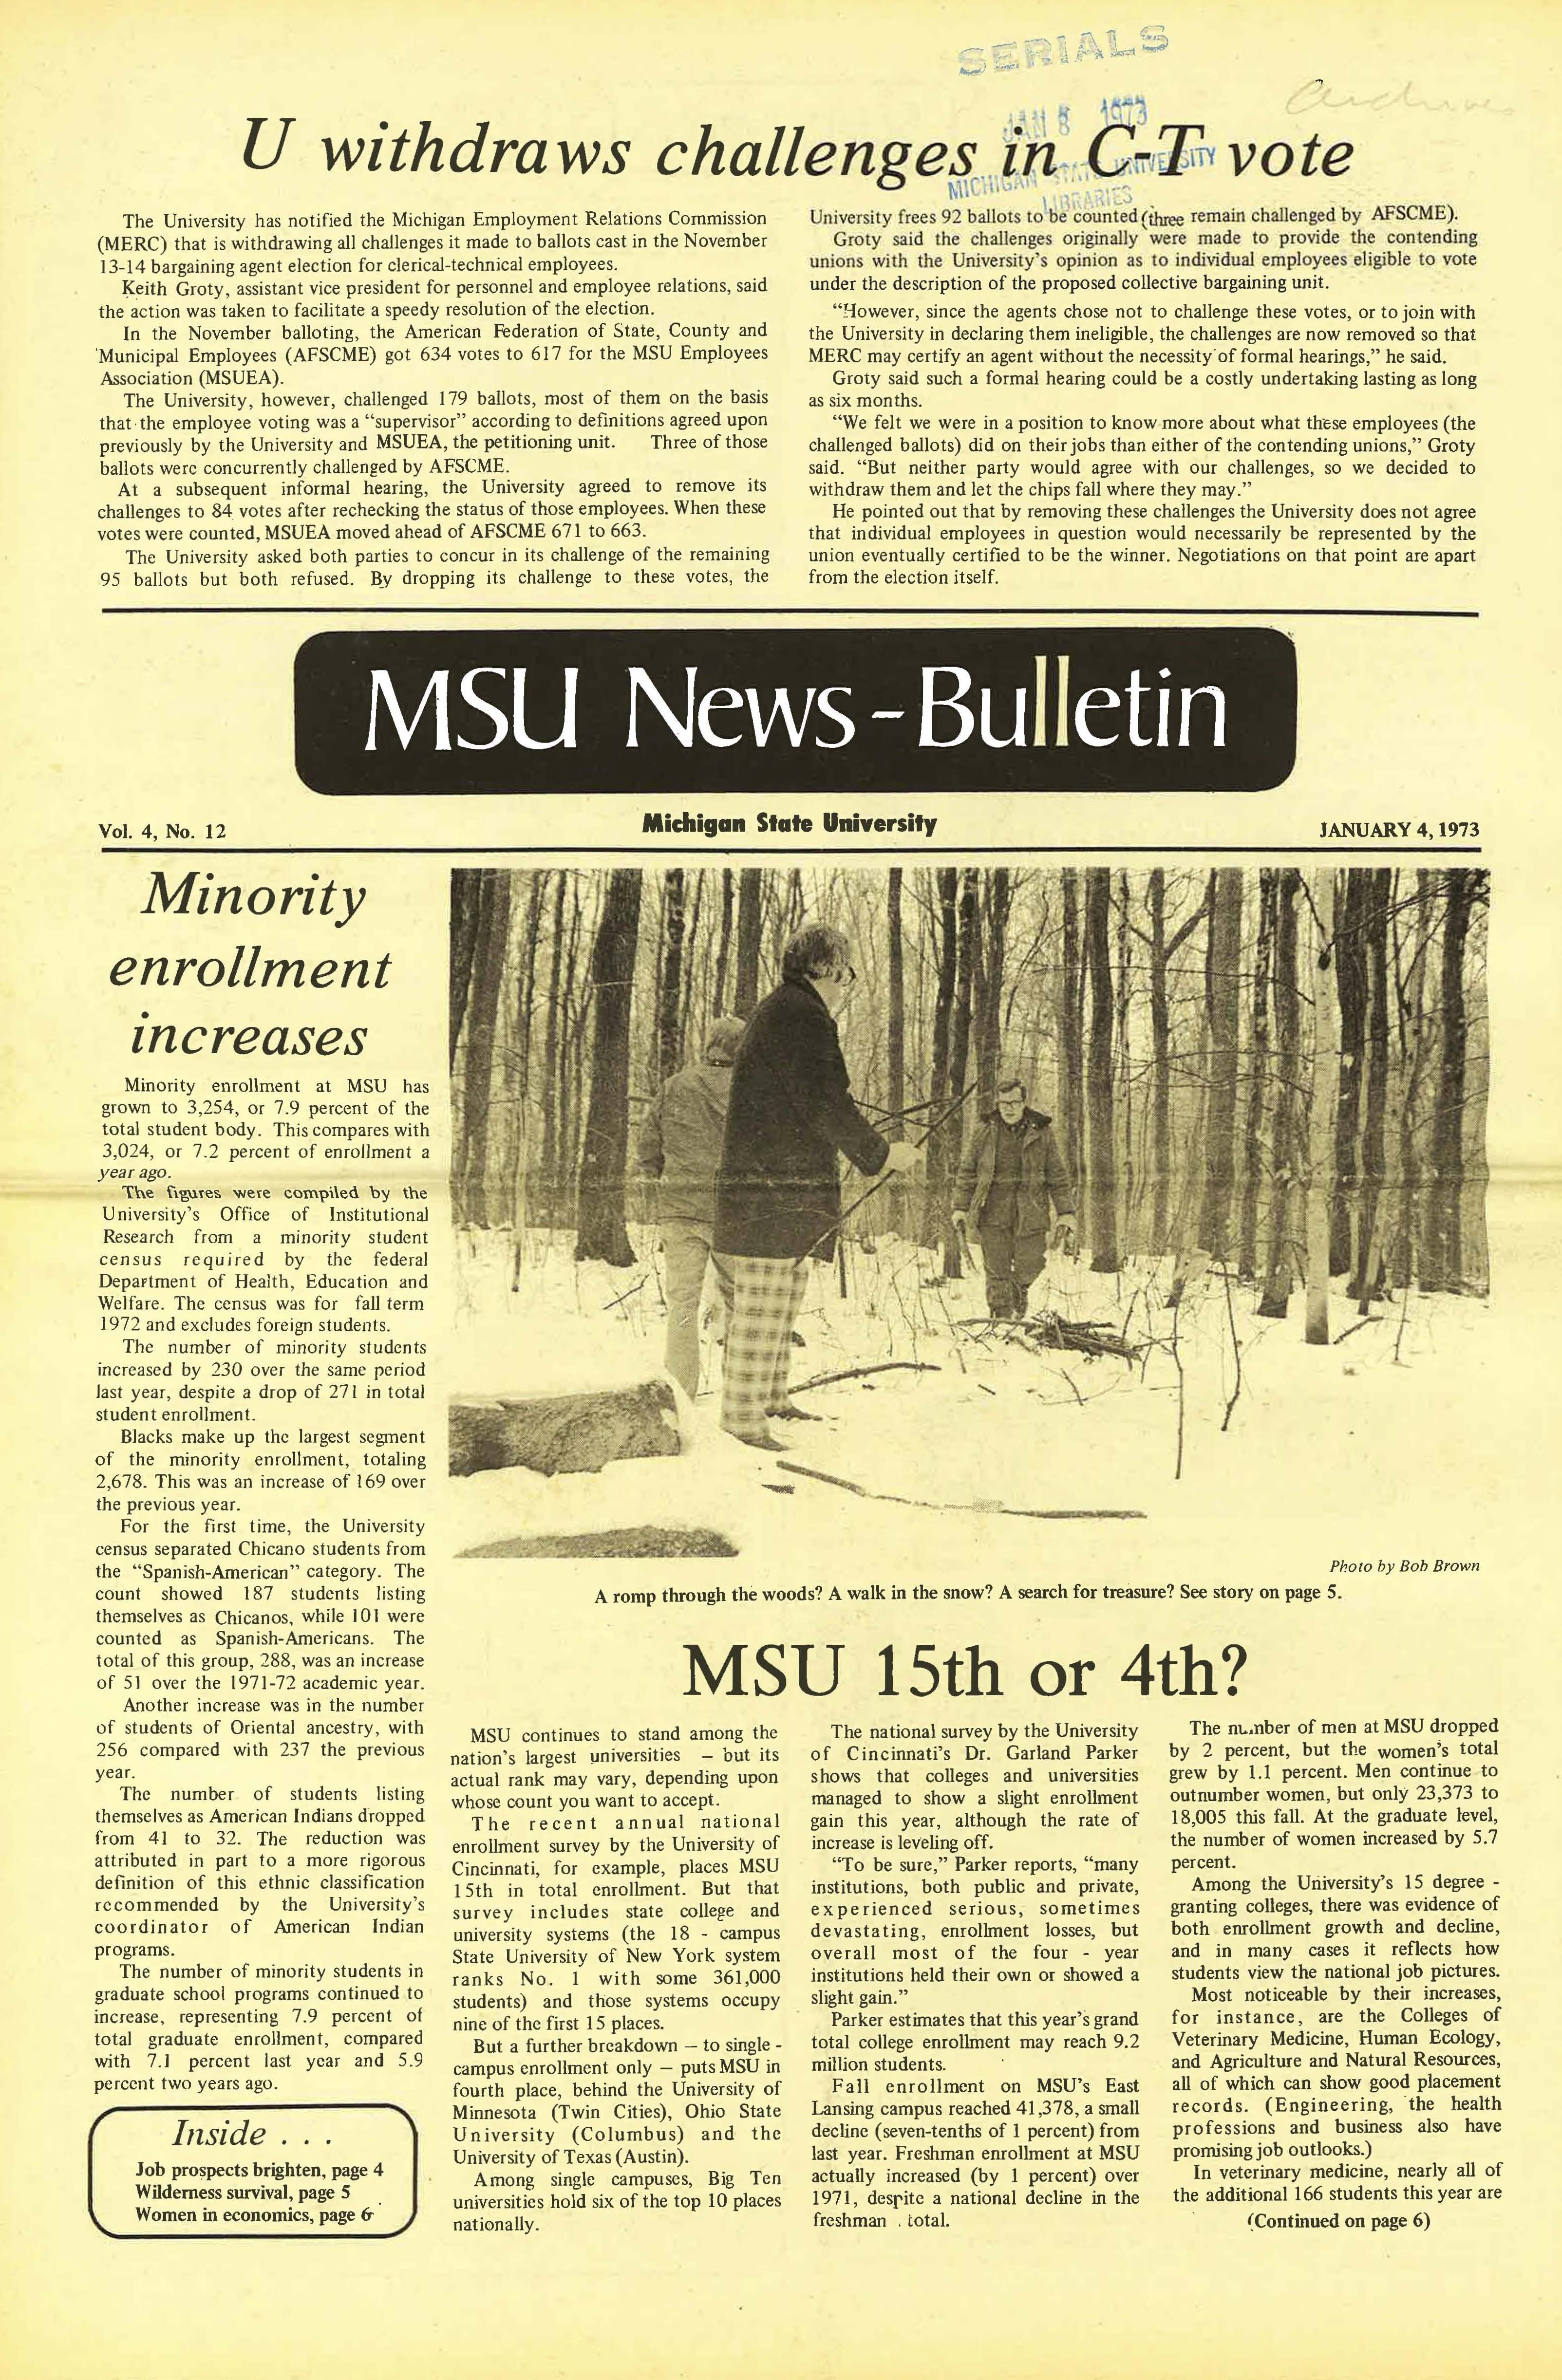 MSU News Bulletin, vol. 4, No. 25, April 19, 1973